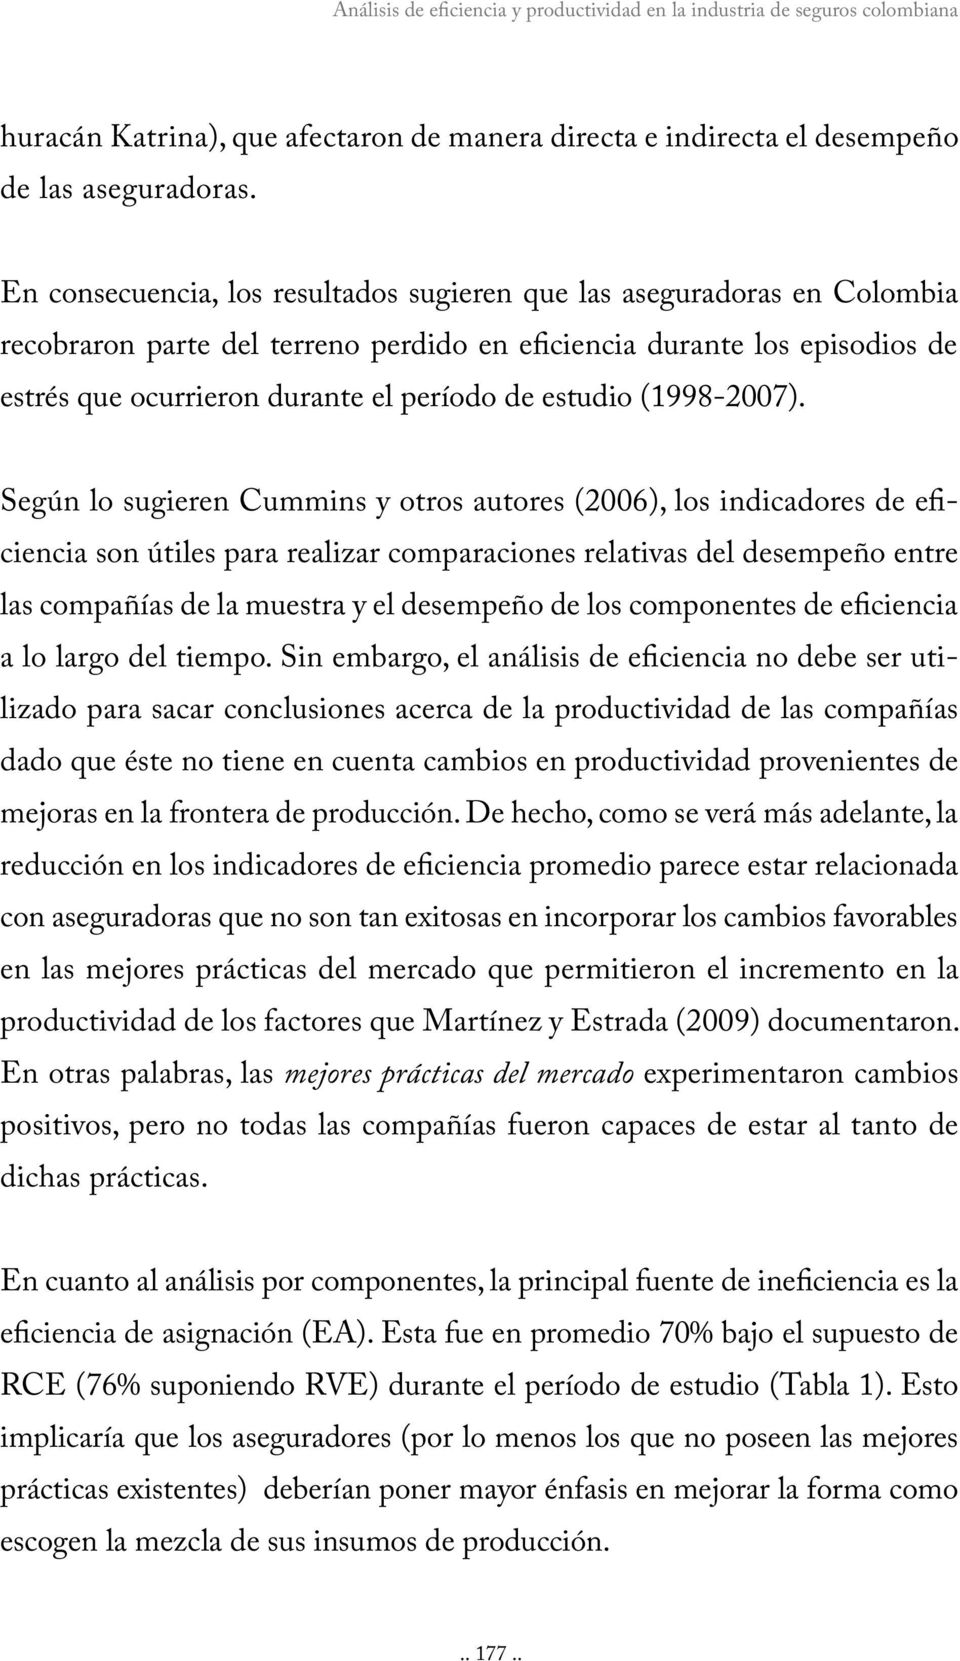 estudio (1998-2007).